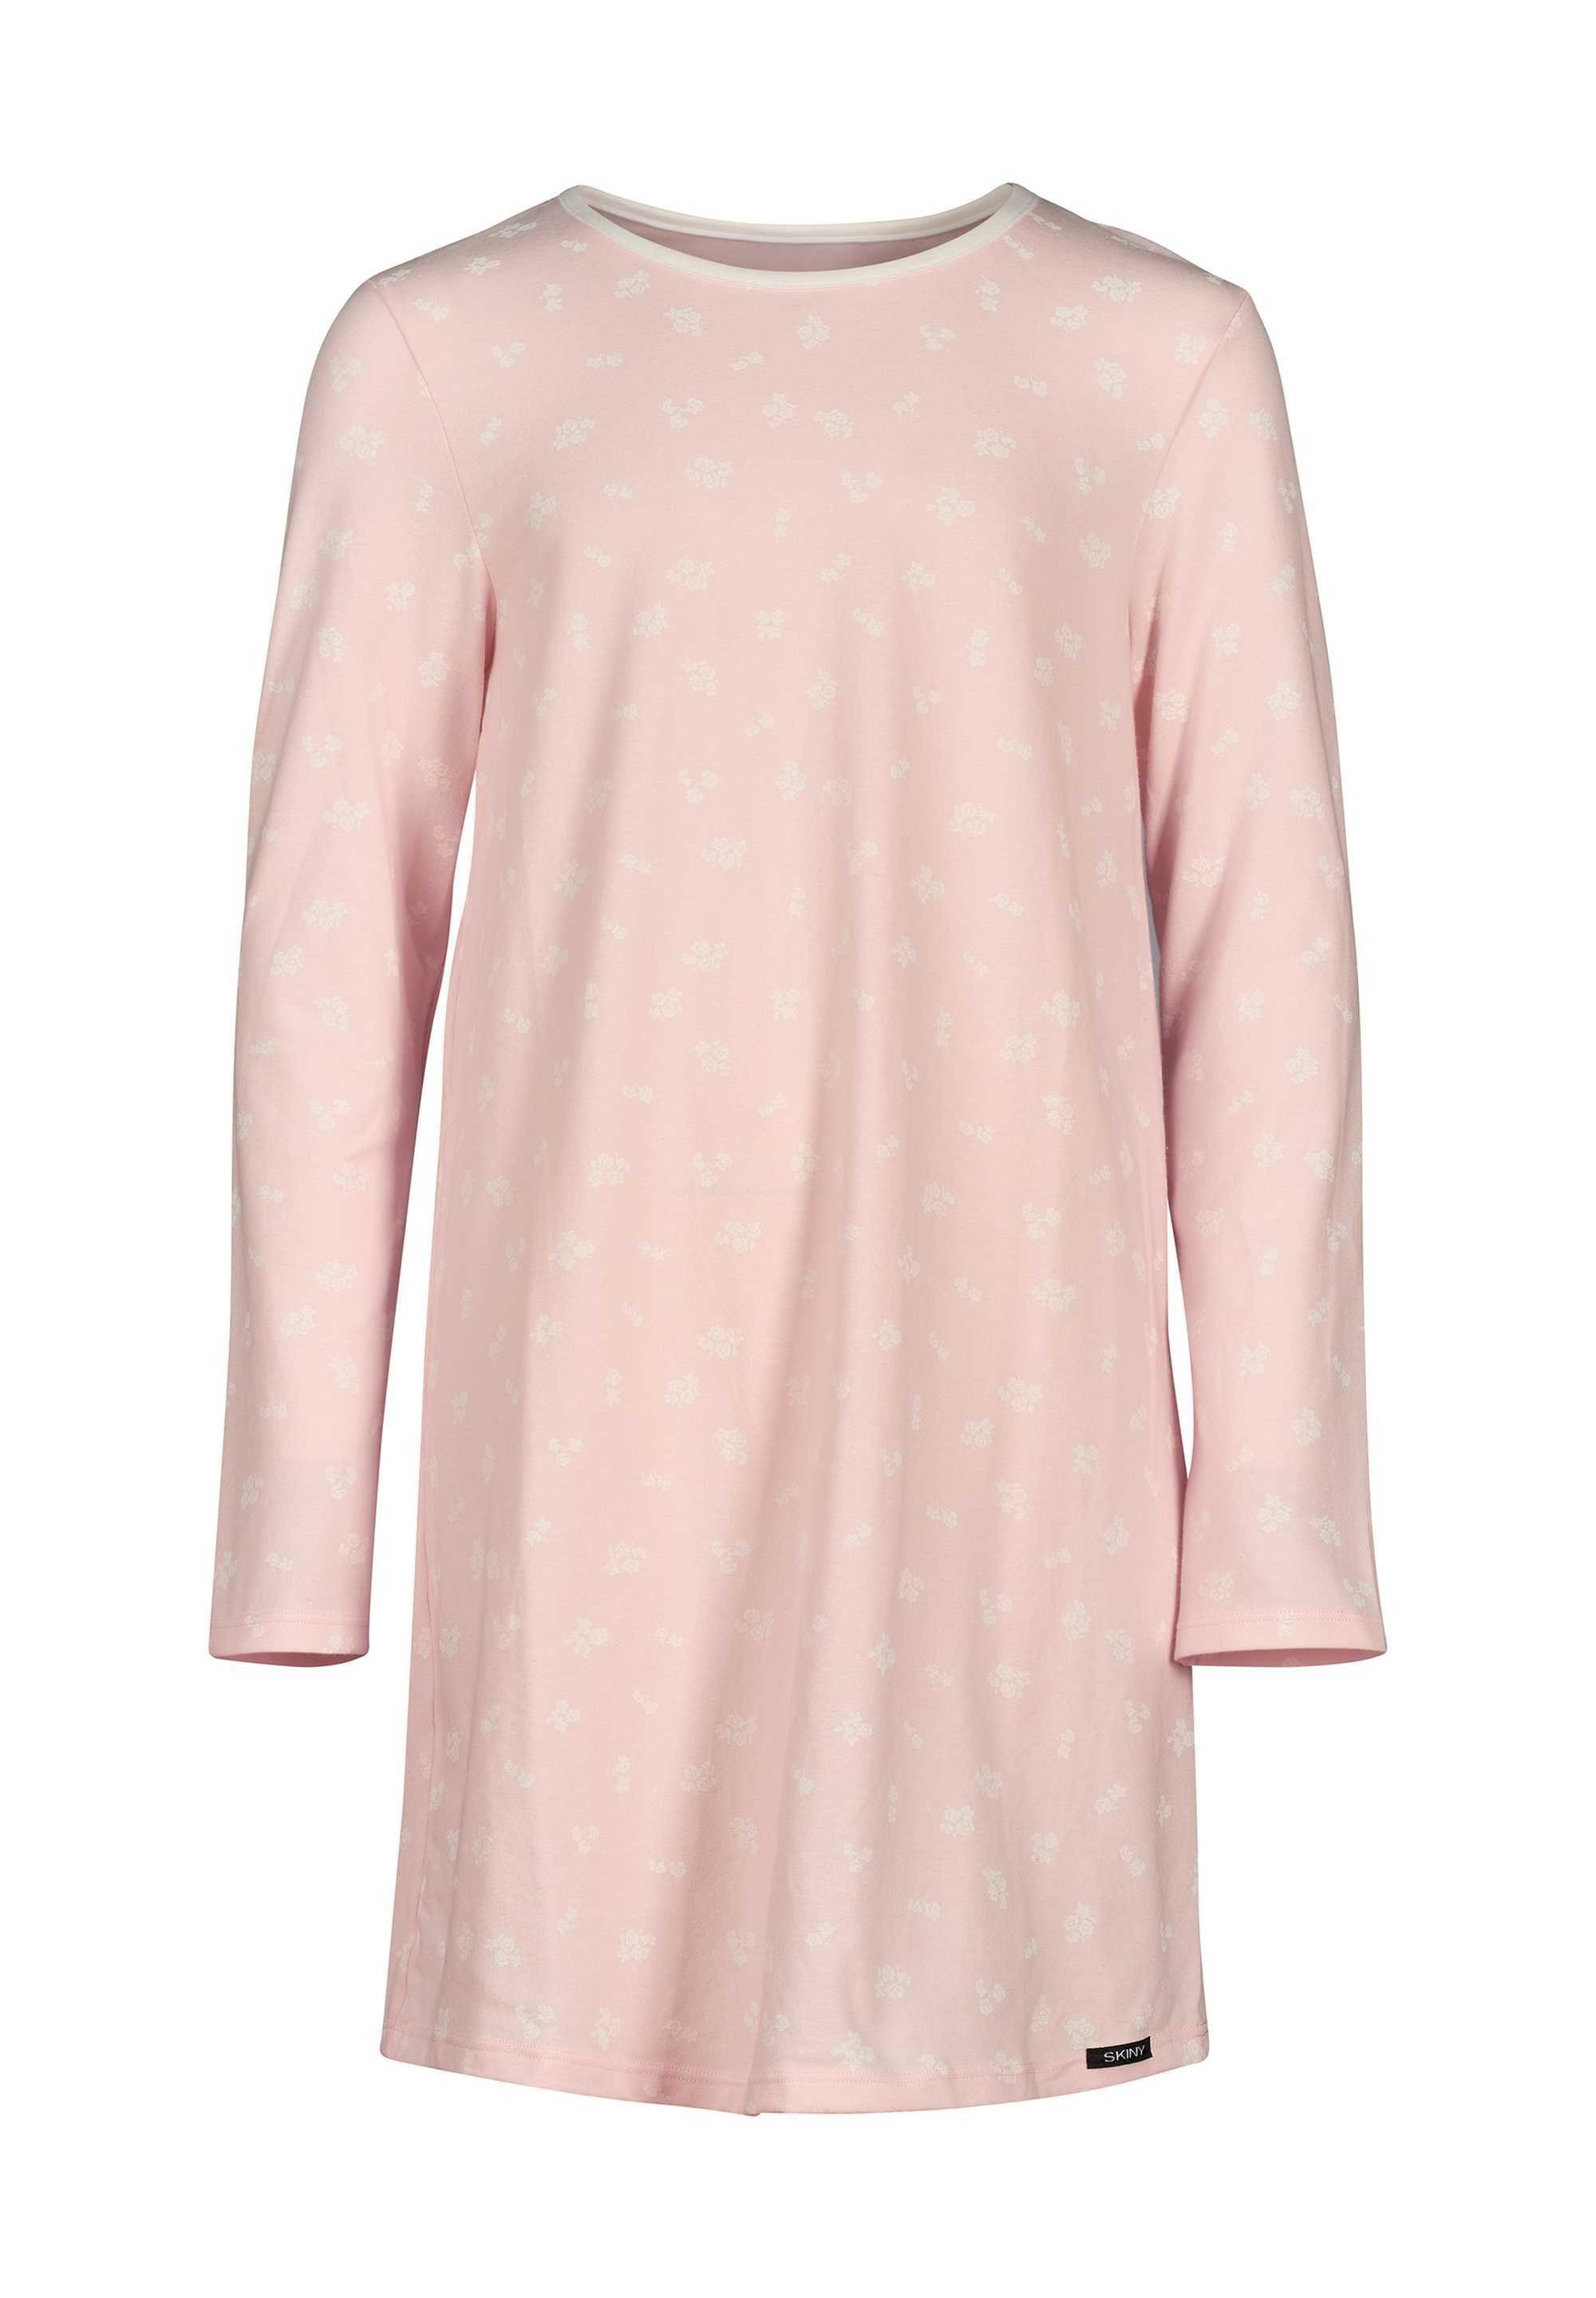 Nachthemd Langarm, Skiny - Kinder Sleepshirt, Mädchen Pyjama Rosa